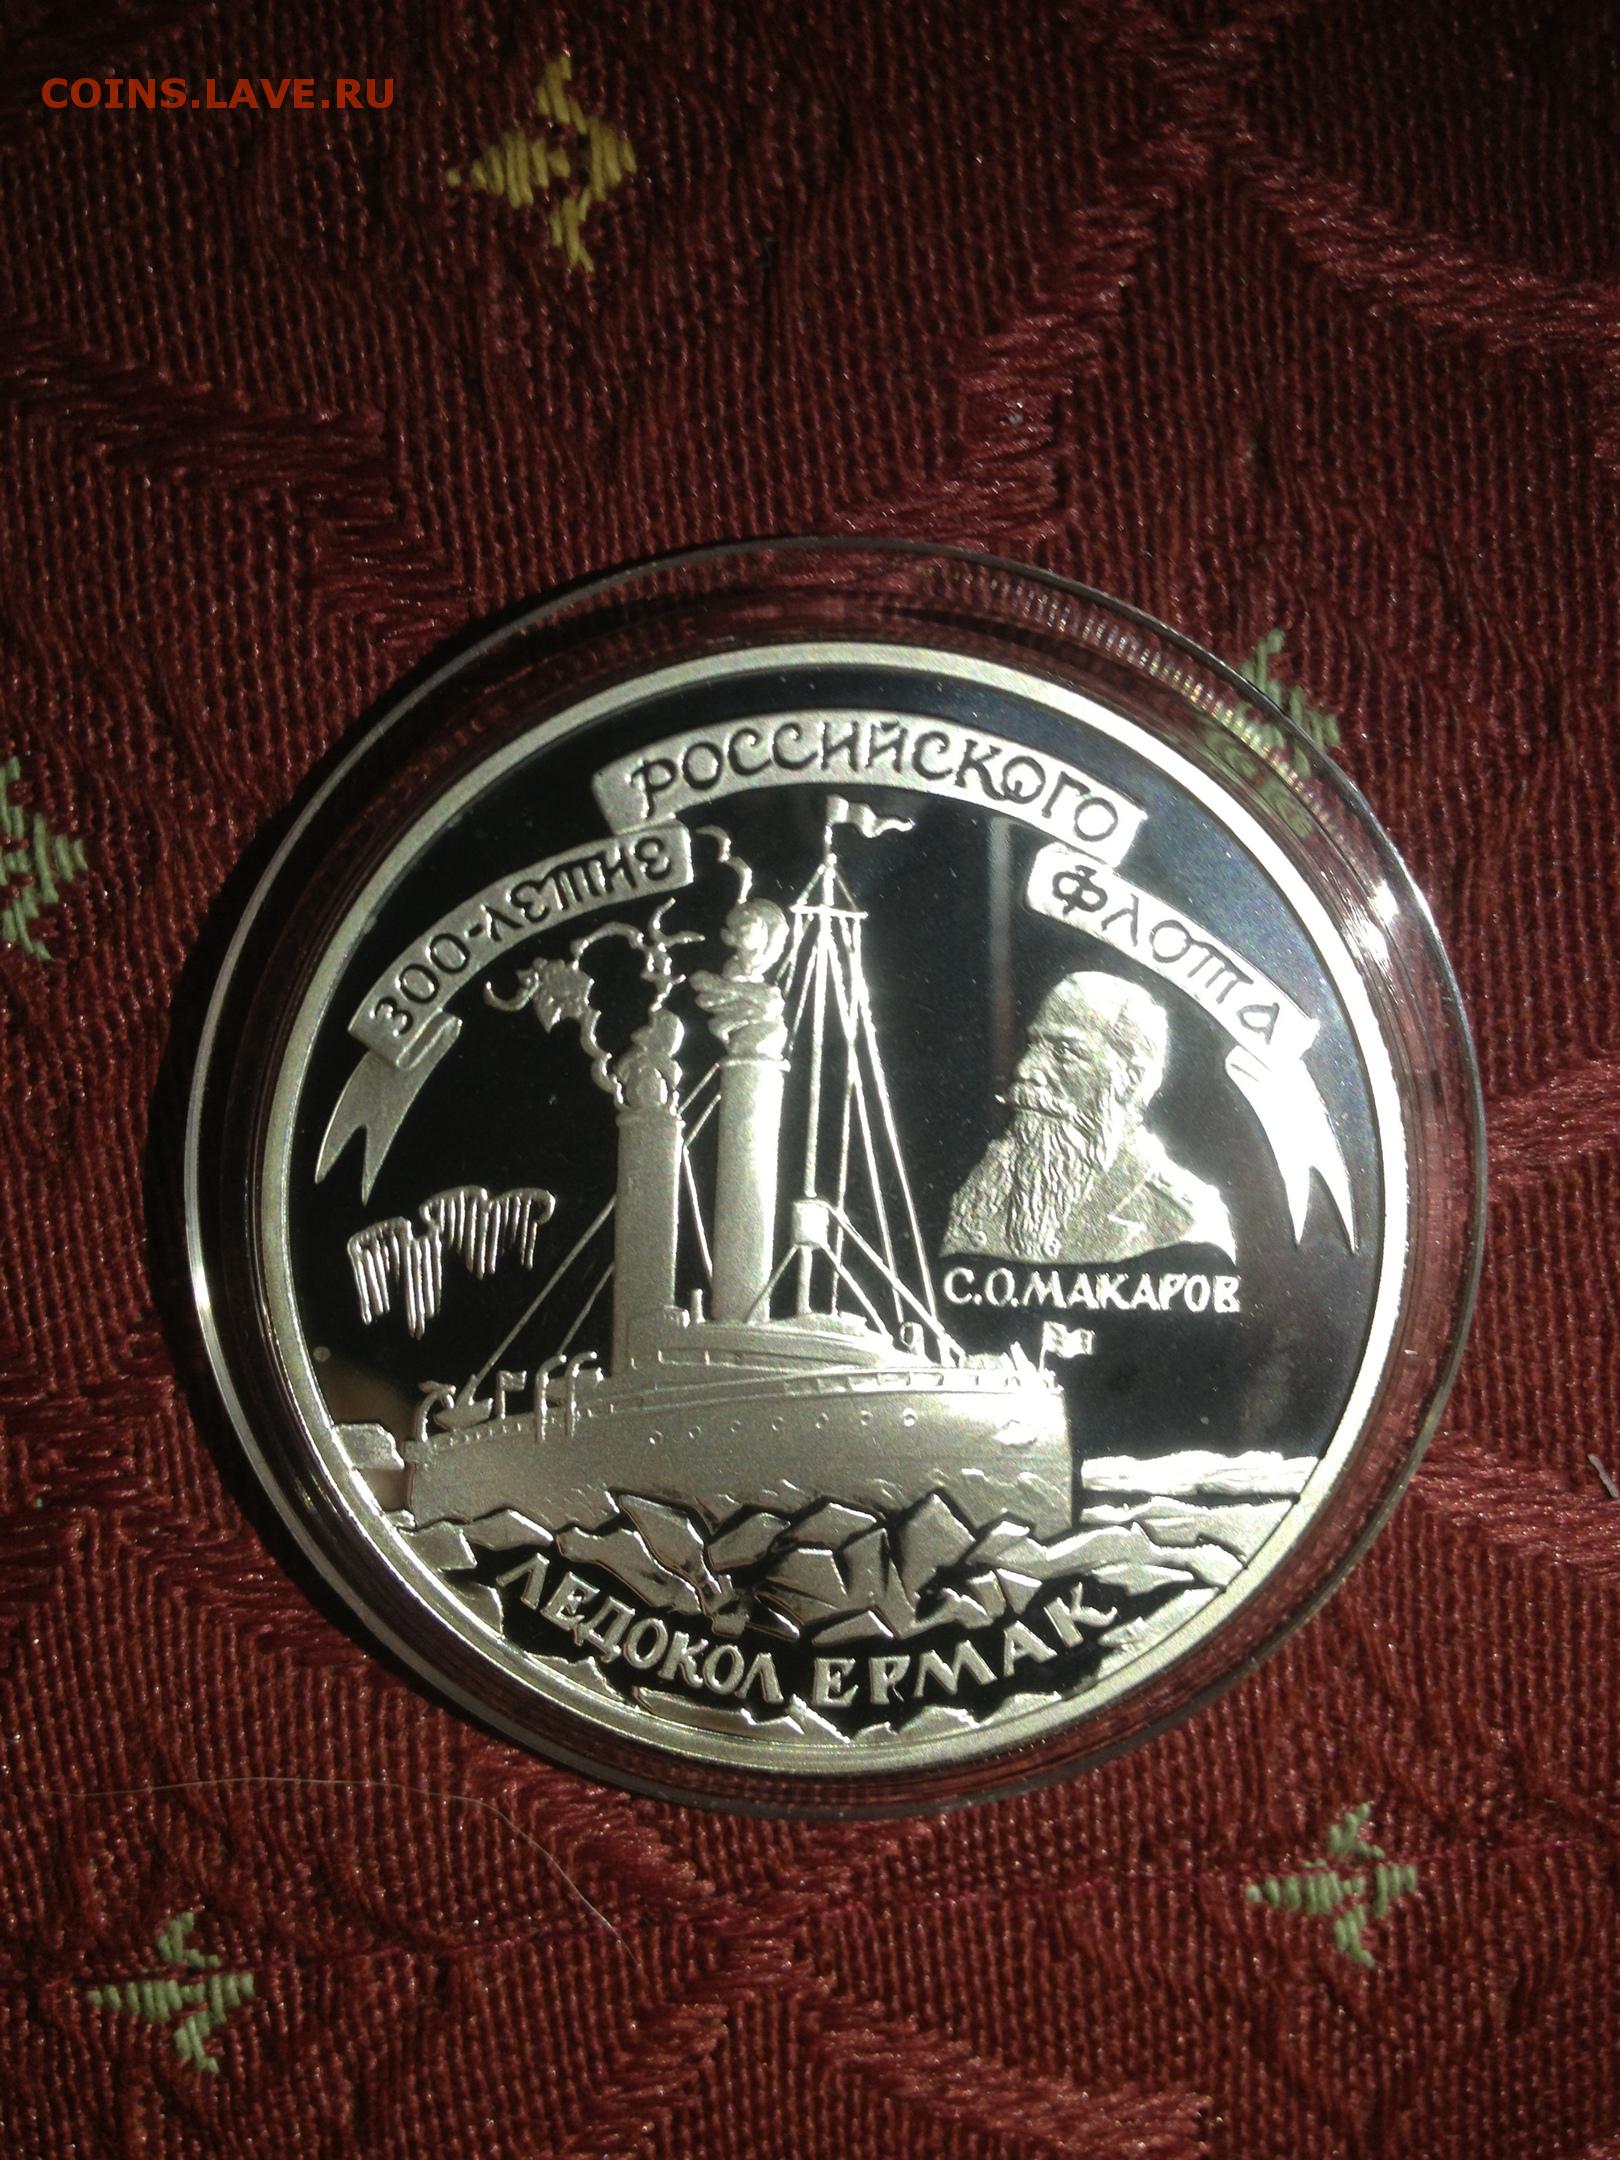 Ледокол монета купить. Медаль 300 летие российского военно-морского флота. Ледокол Ленин Золотая монета.